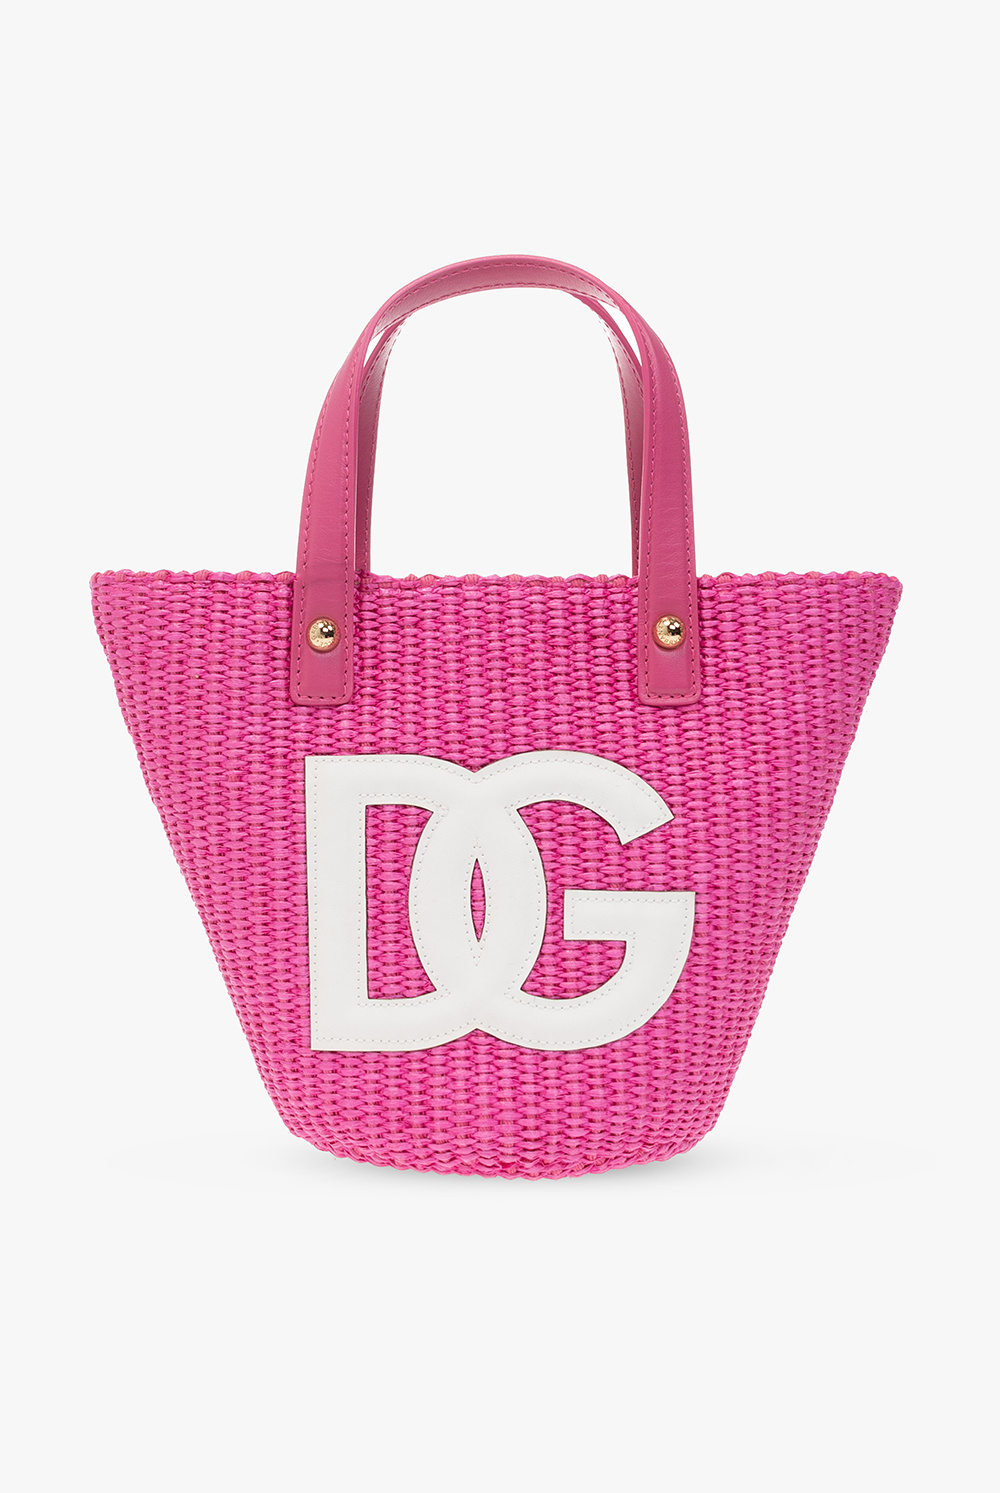 Dolce & Gabbana Kids Shopper bag